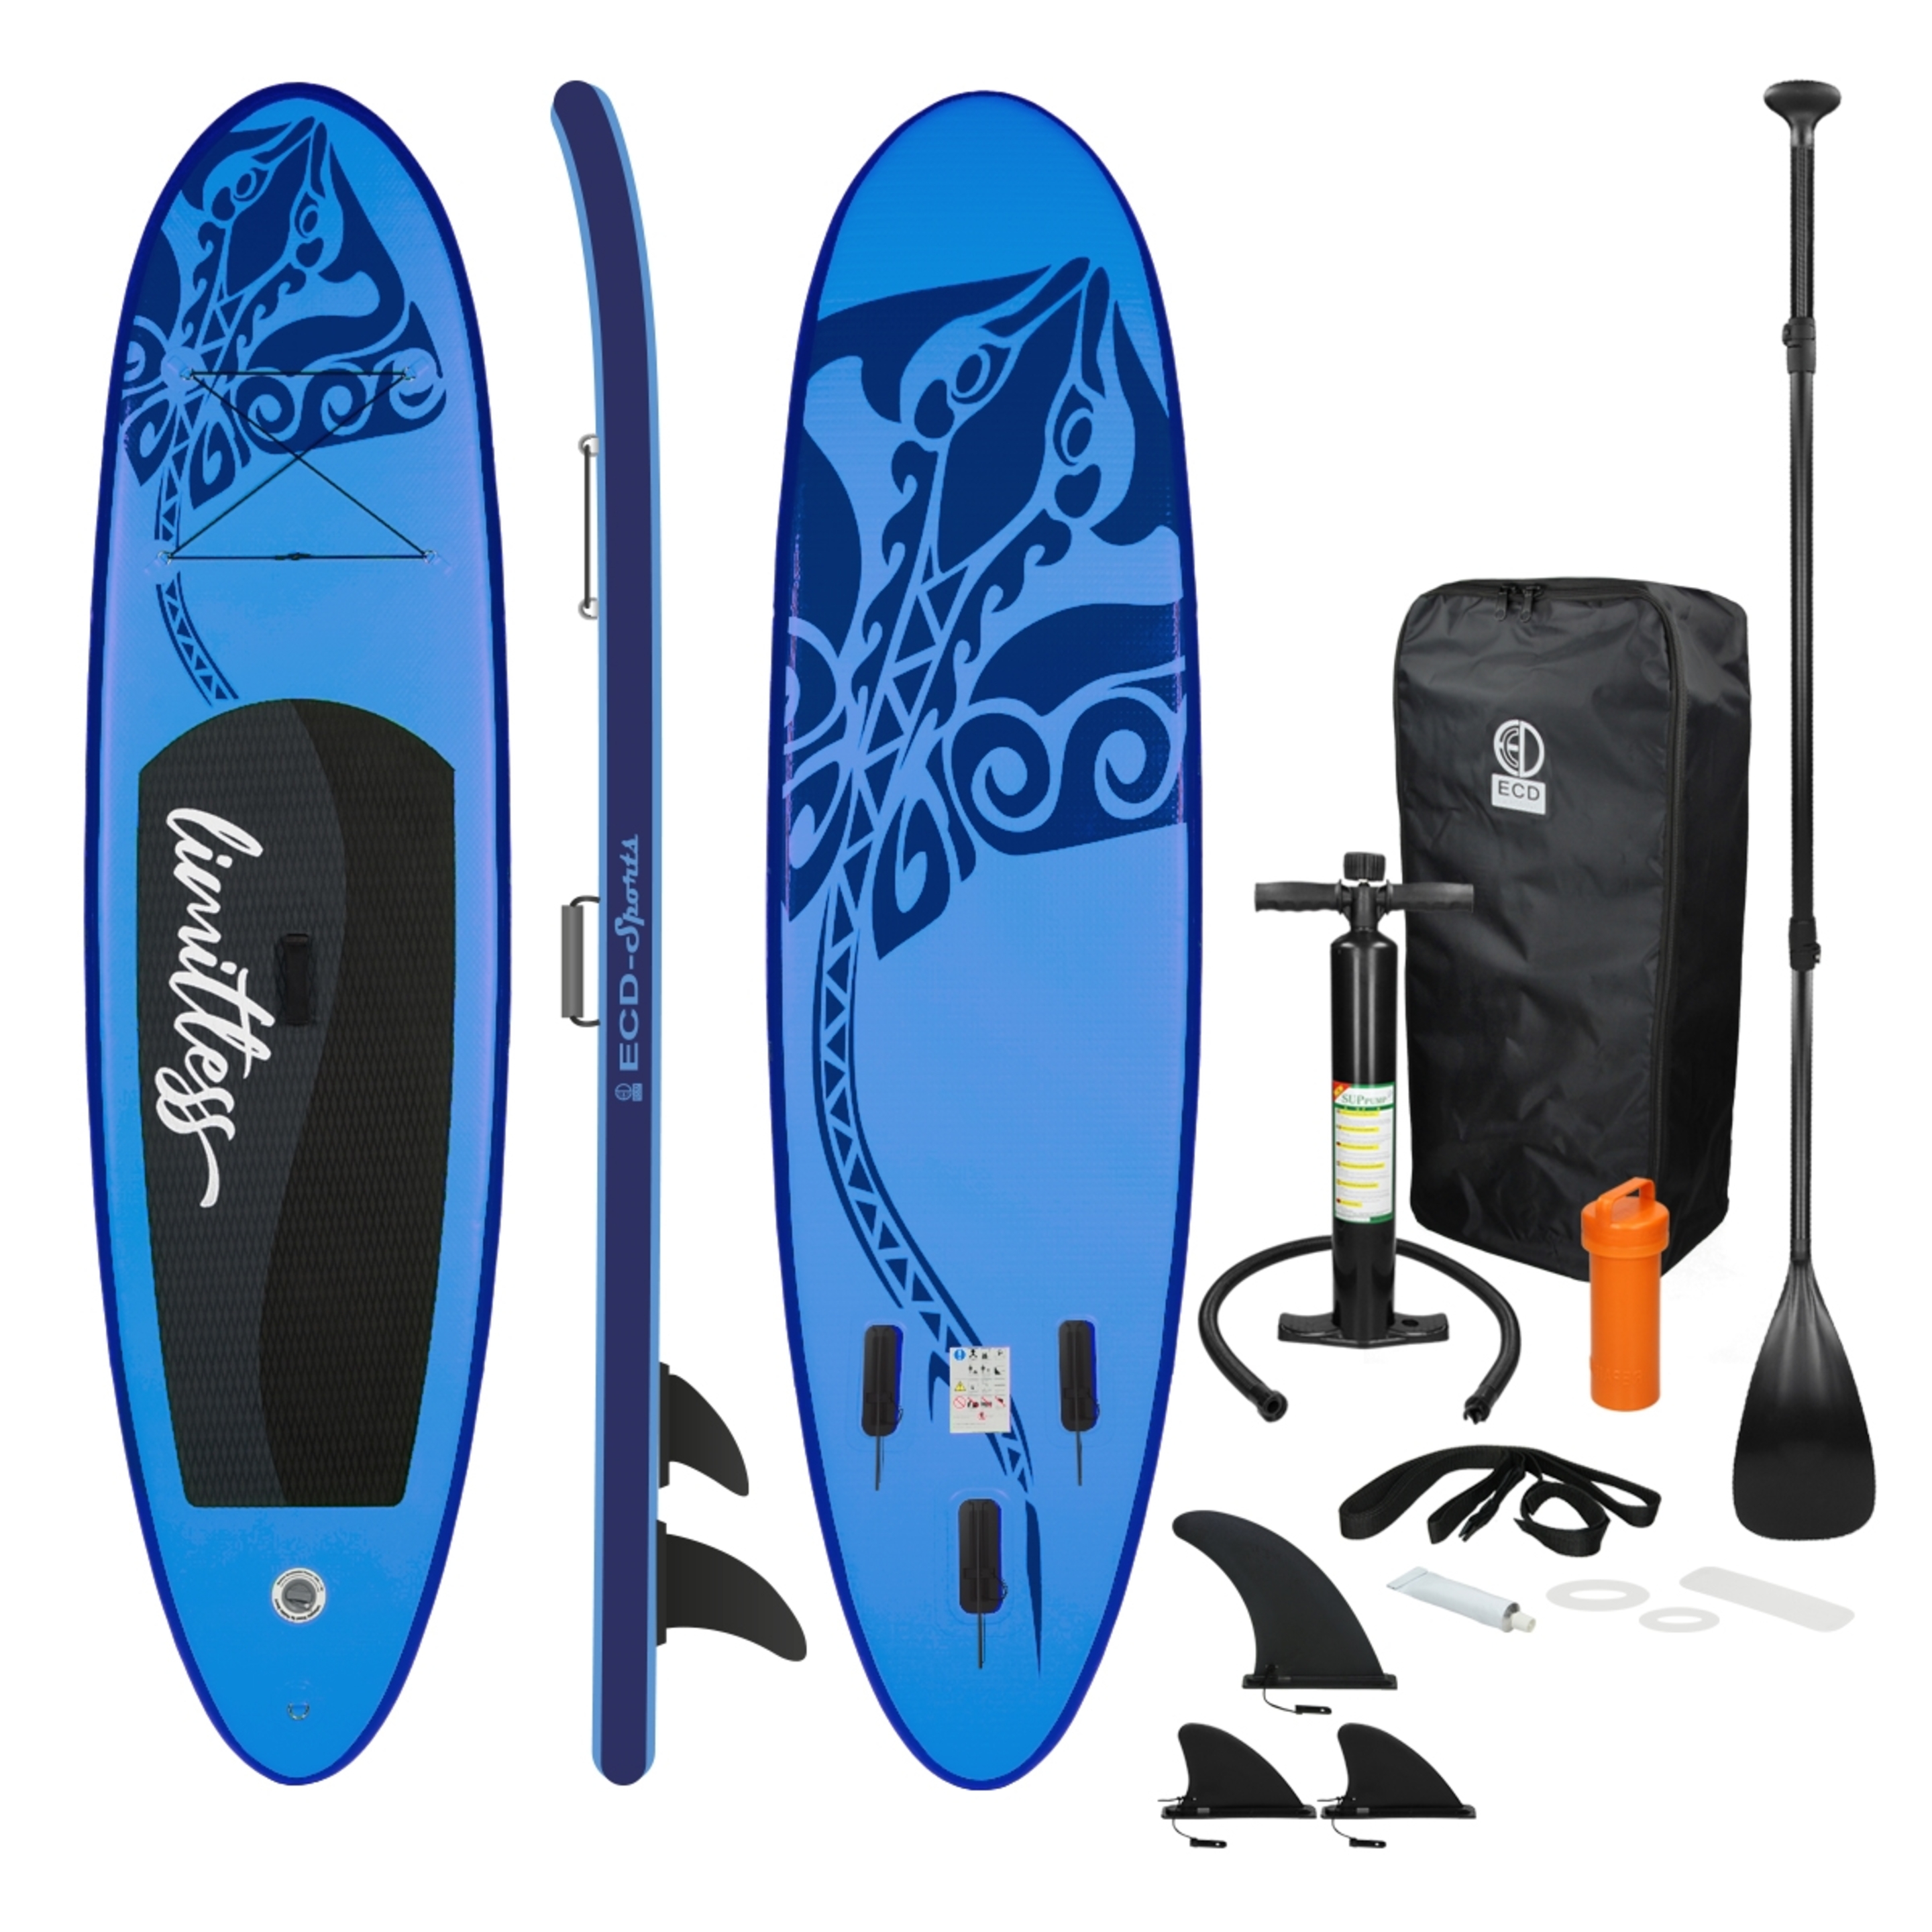 Ecd-germany Tabla Hinchable De Paddle Surf Sup Con Accesorios - Azul - Una fantástica tabla allround  MKP